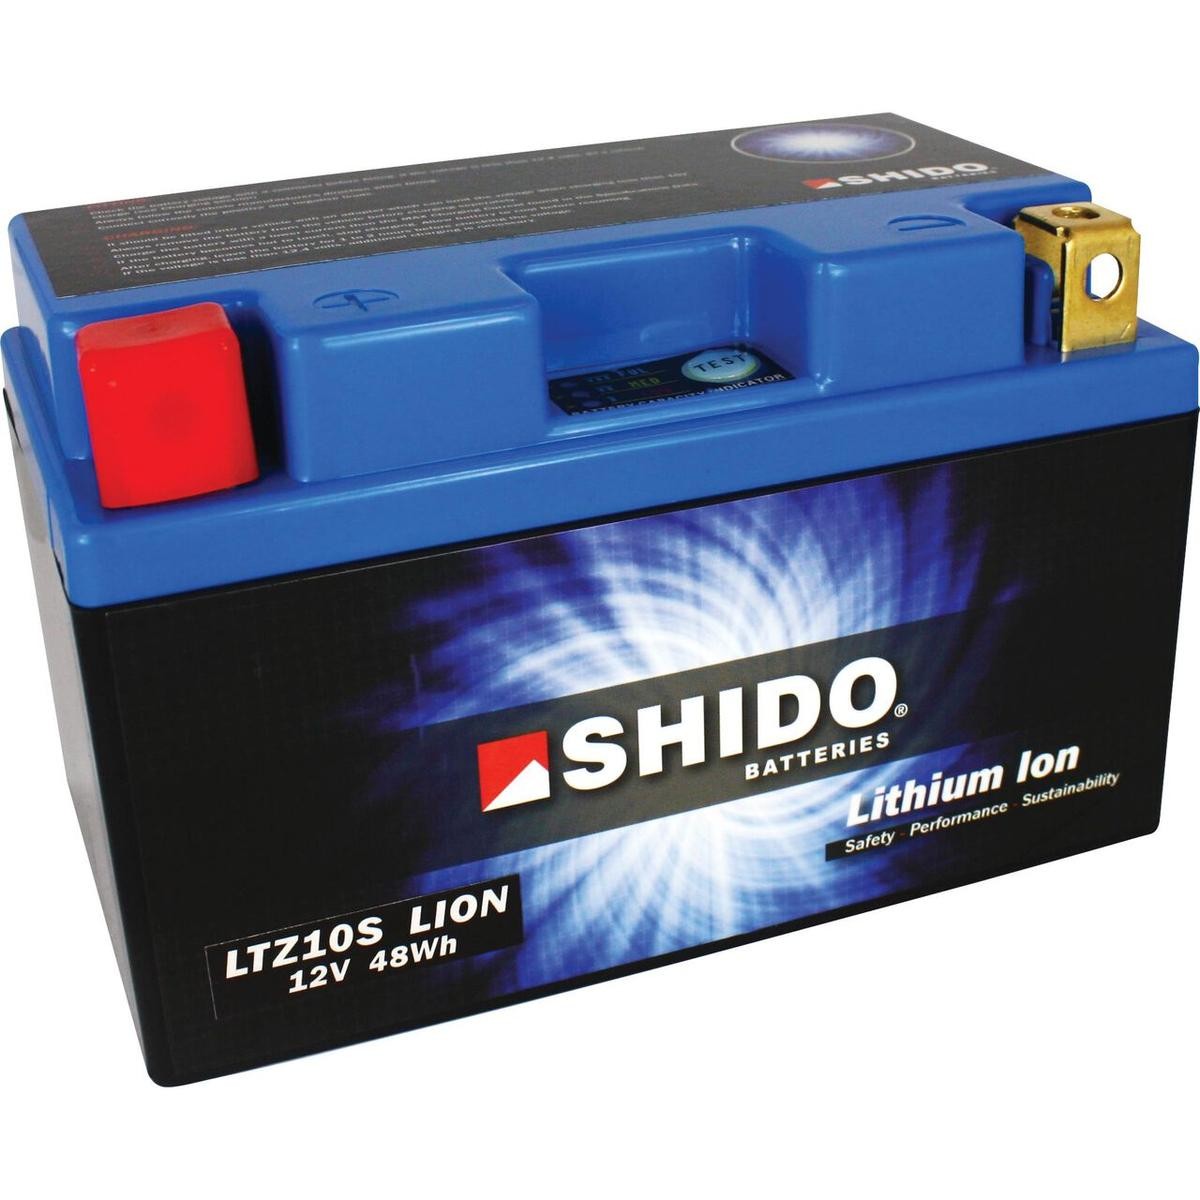 HONDA NT Batterie 12V 4Ah 240A strap mit Ladezustandsanzeige, Kippwinkel bis 180°, Li-Ionen-Batterie, Lithium-Ferrum-Batterie (LiFePO4), Pluspol links Shido LTZ10SLION-S-